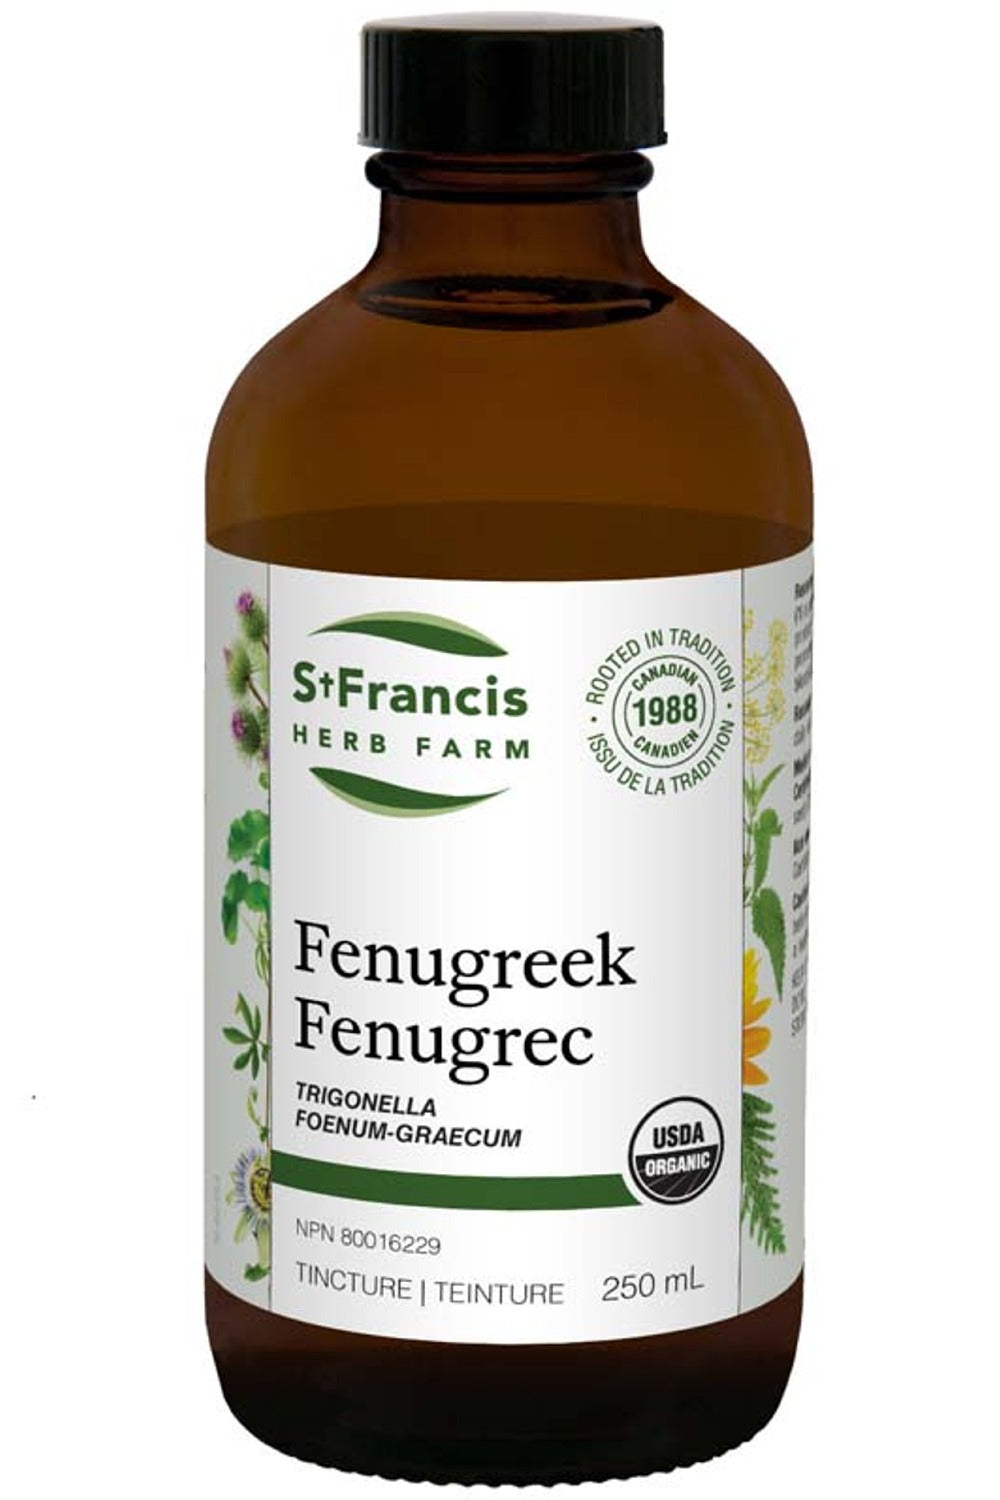 ST FRANCIS HERB FARM Fenugreek (250 ml)